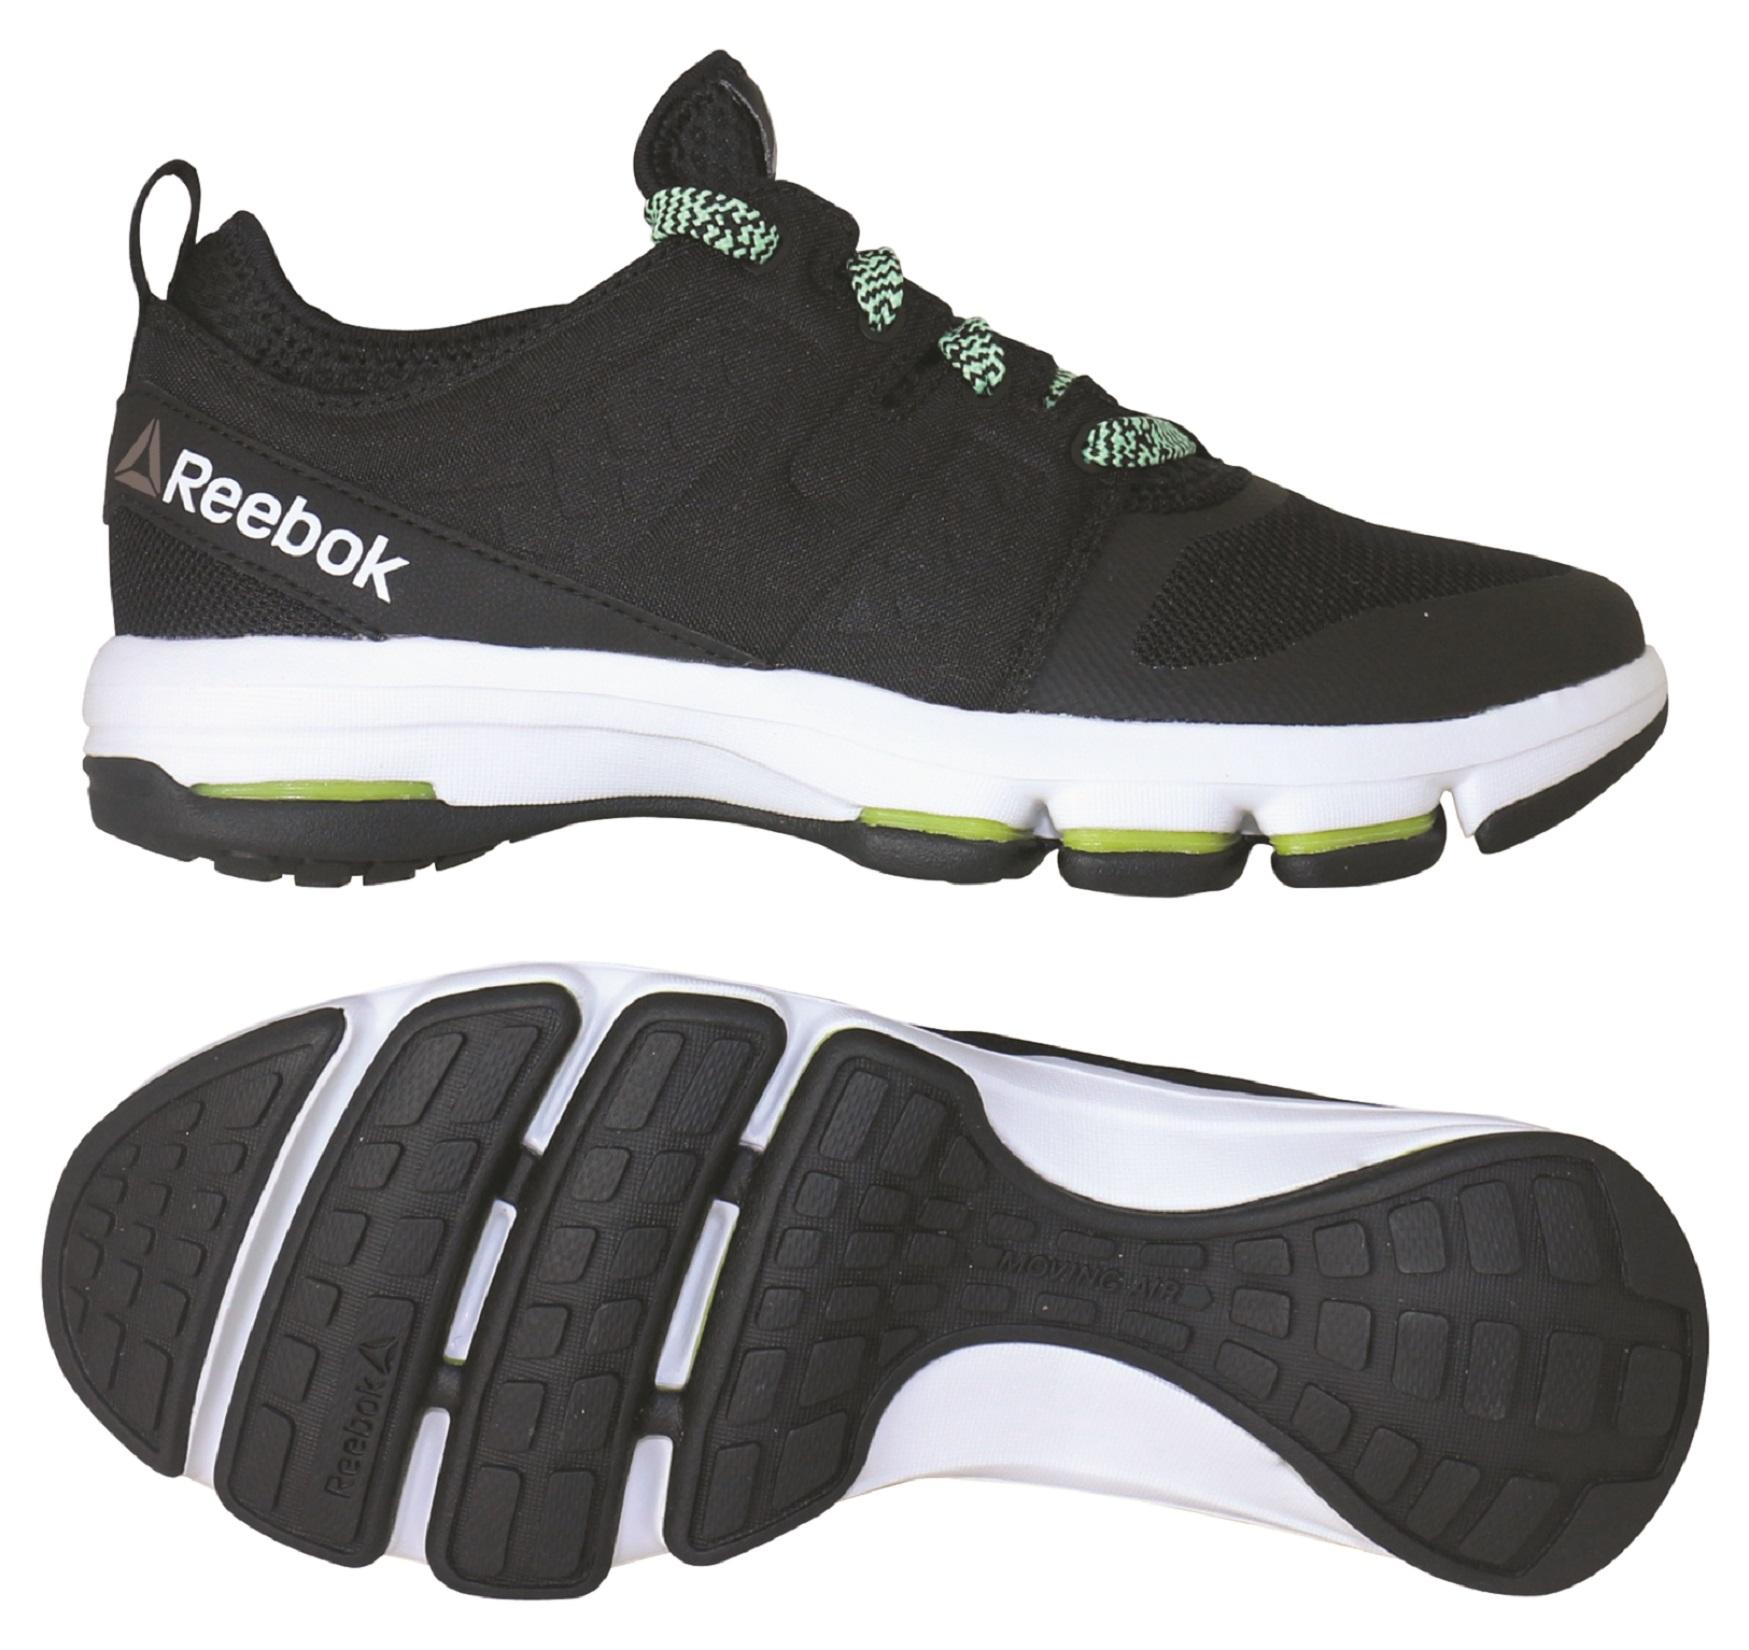 Reebok Women's CloudRide DMX Walking Shoe - Black